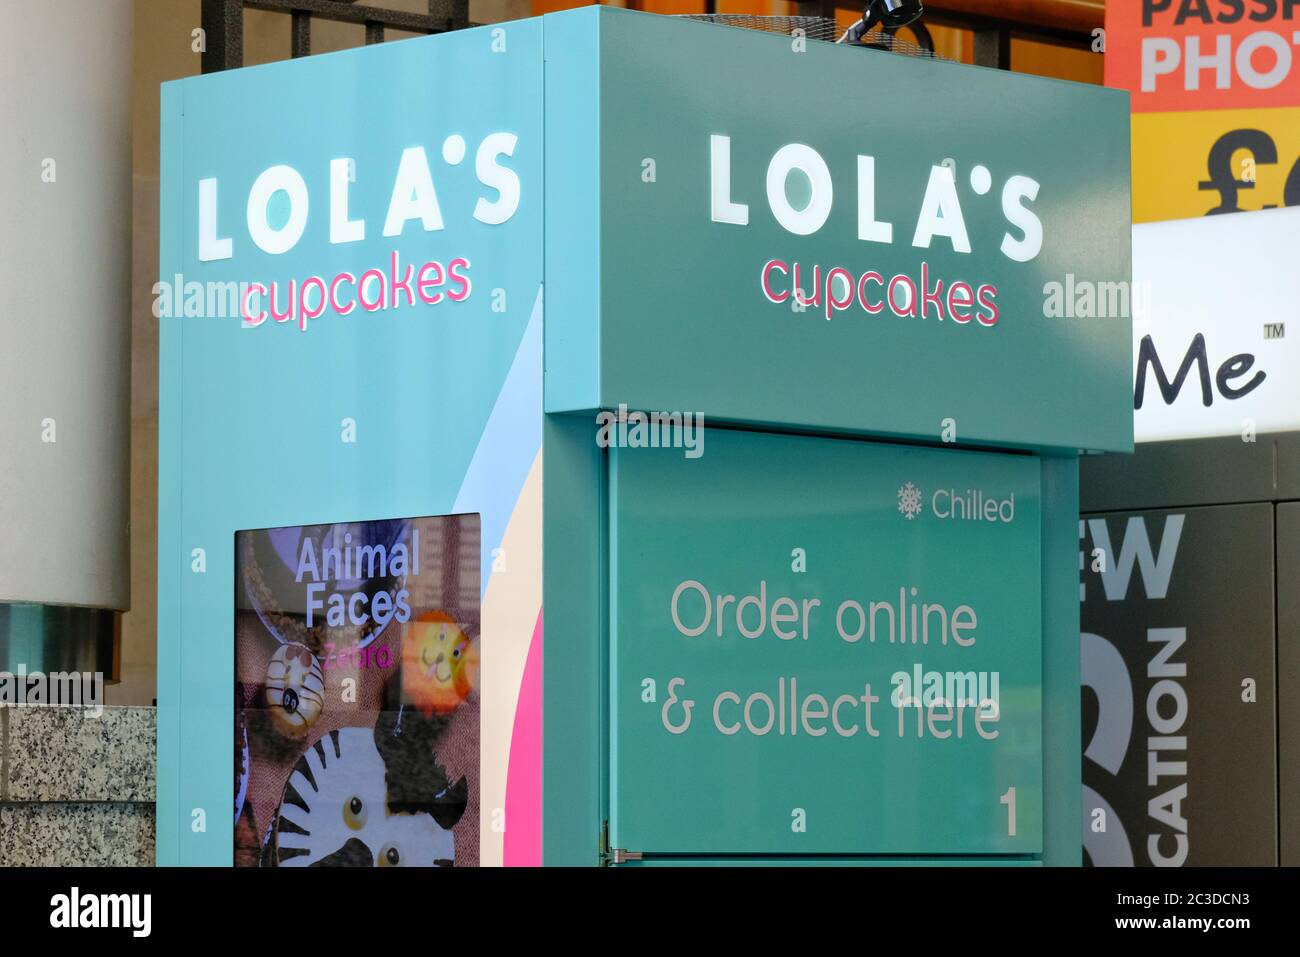 Lola's Cupcakes - Online bestellen, klicken und Service abholen. Stockfoto